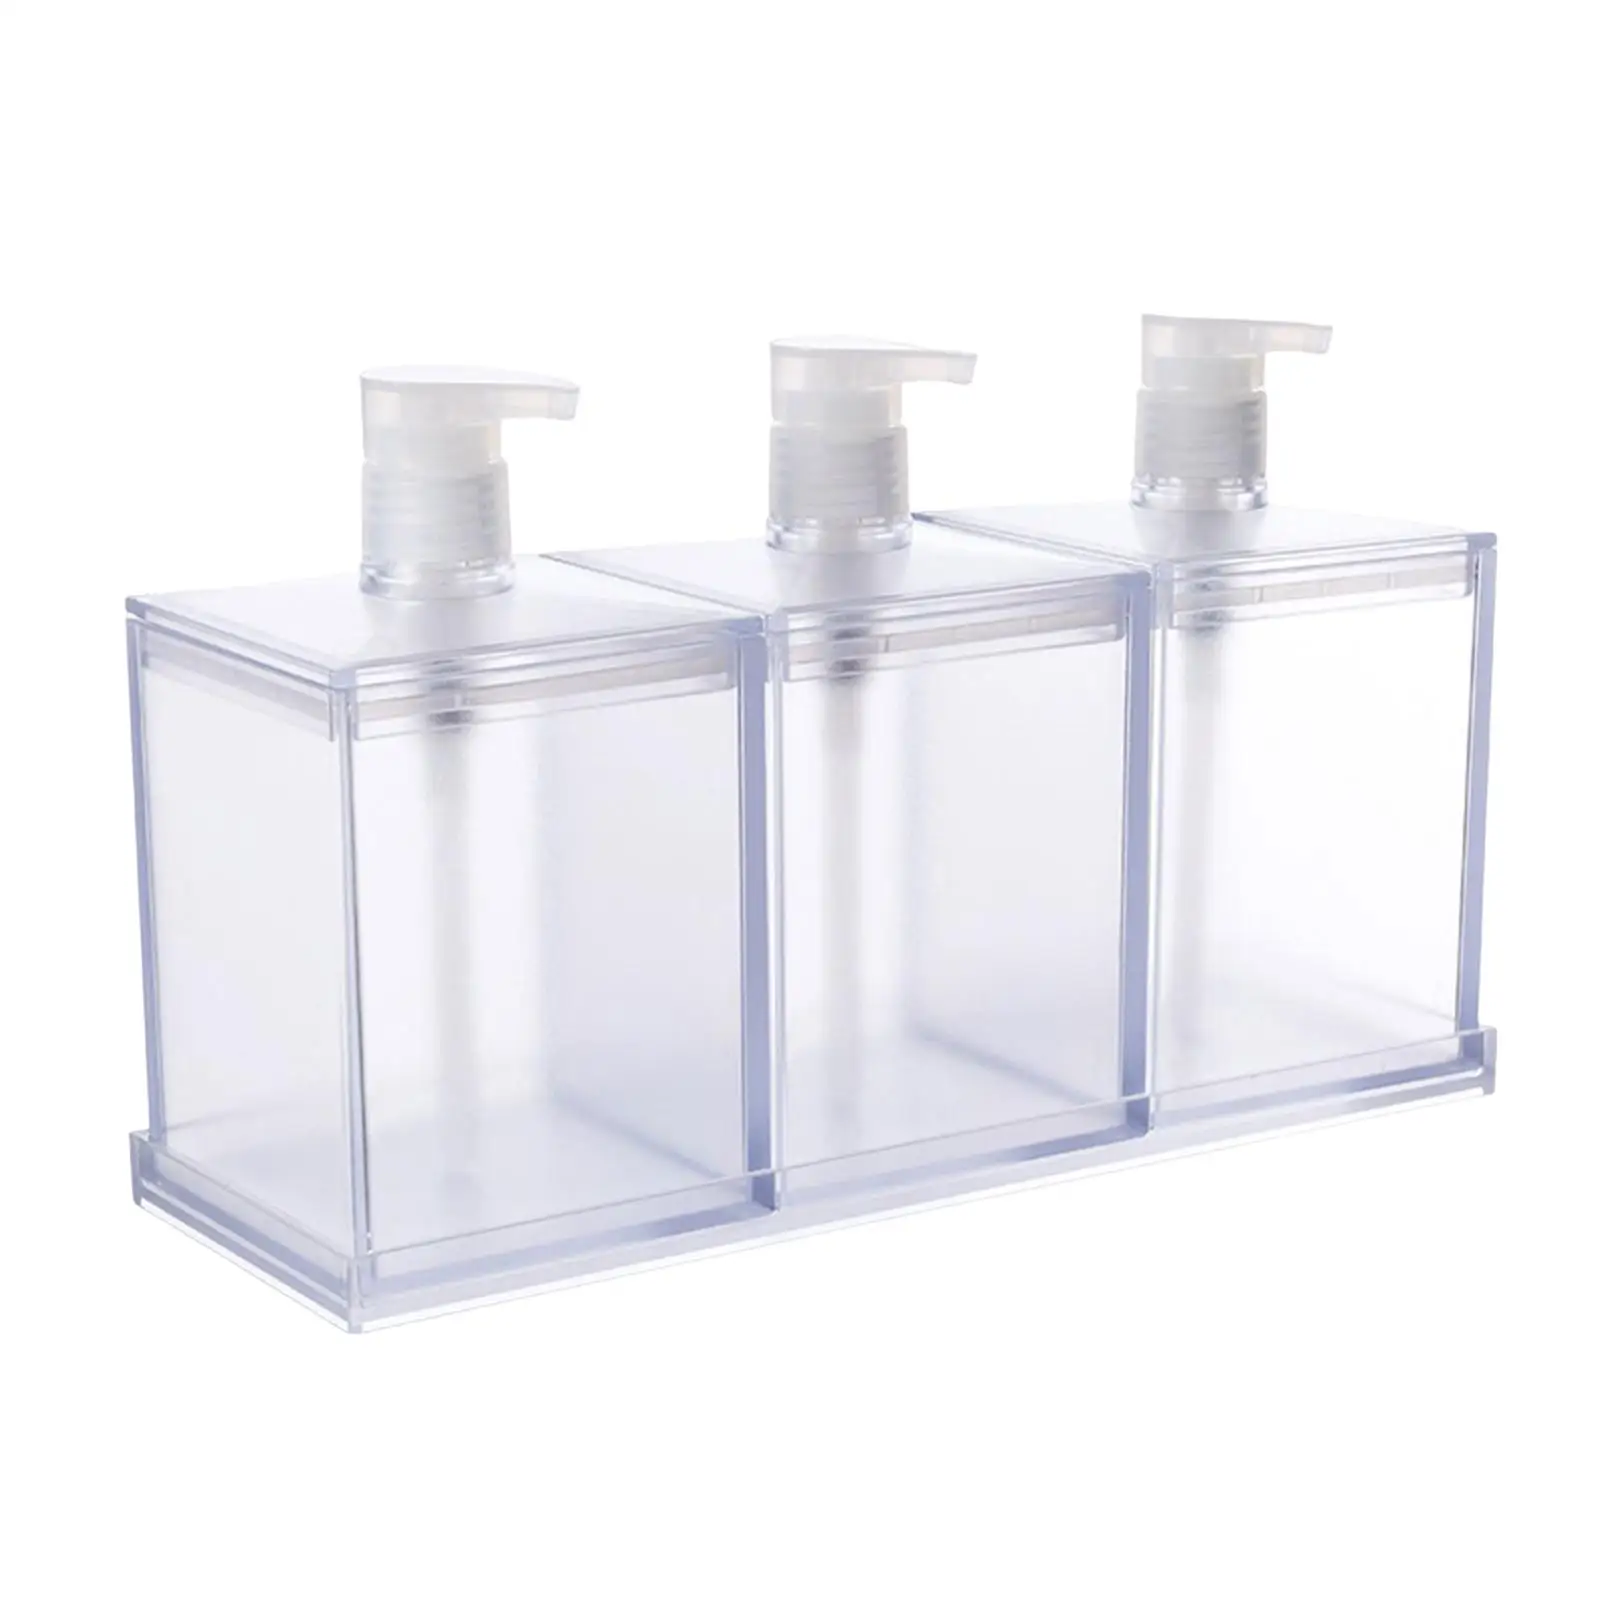 3 Pcs/Set Lotion Dispenser Bottle Shower Gel Container Reusable Empty Bottle Empty Soap Pump Bottle for Restroom Office Kitchen